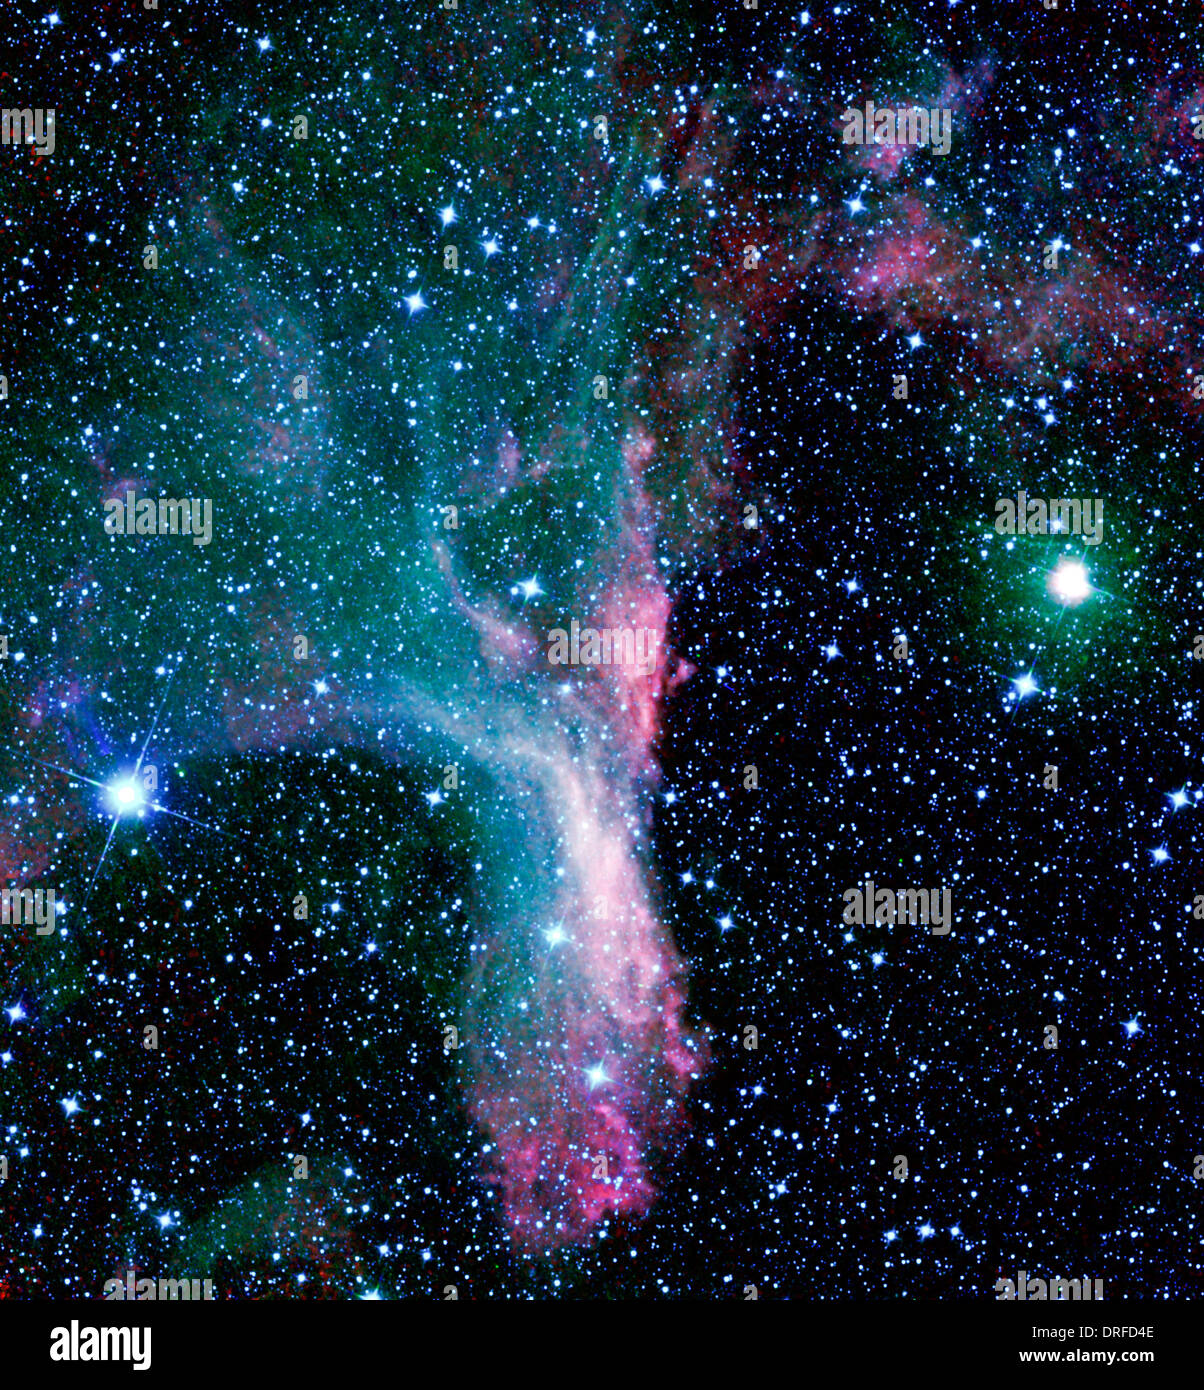 Afferrata in artiglio della costellazione dello Scorpione sorge la nebulosa di riflessione DG 129, una nube di gas e polvere che riflette la luce Foto Stock